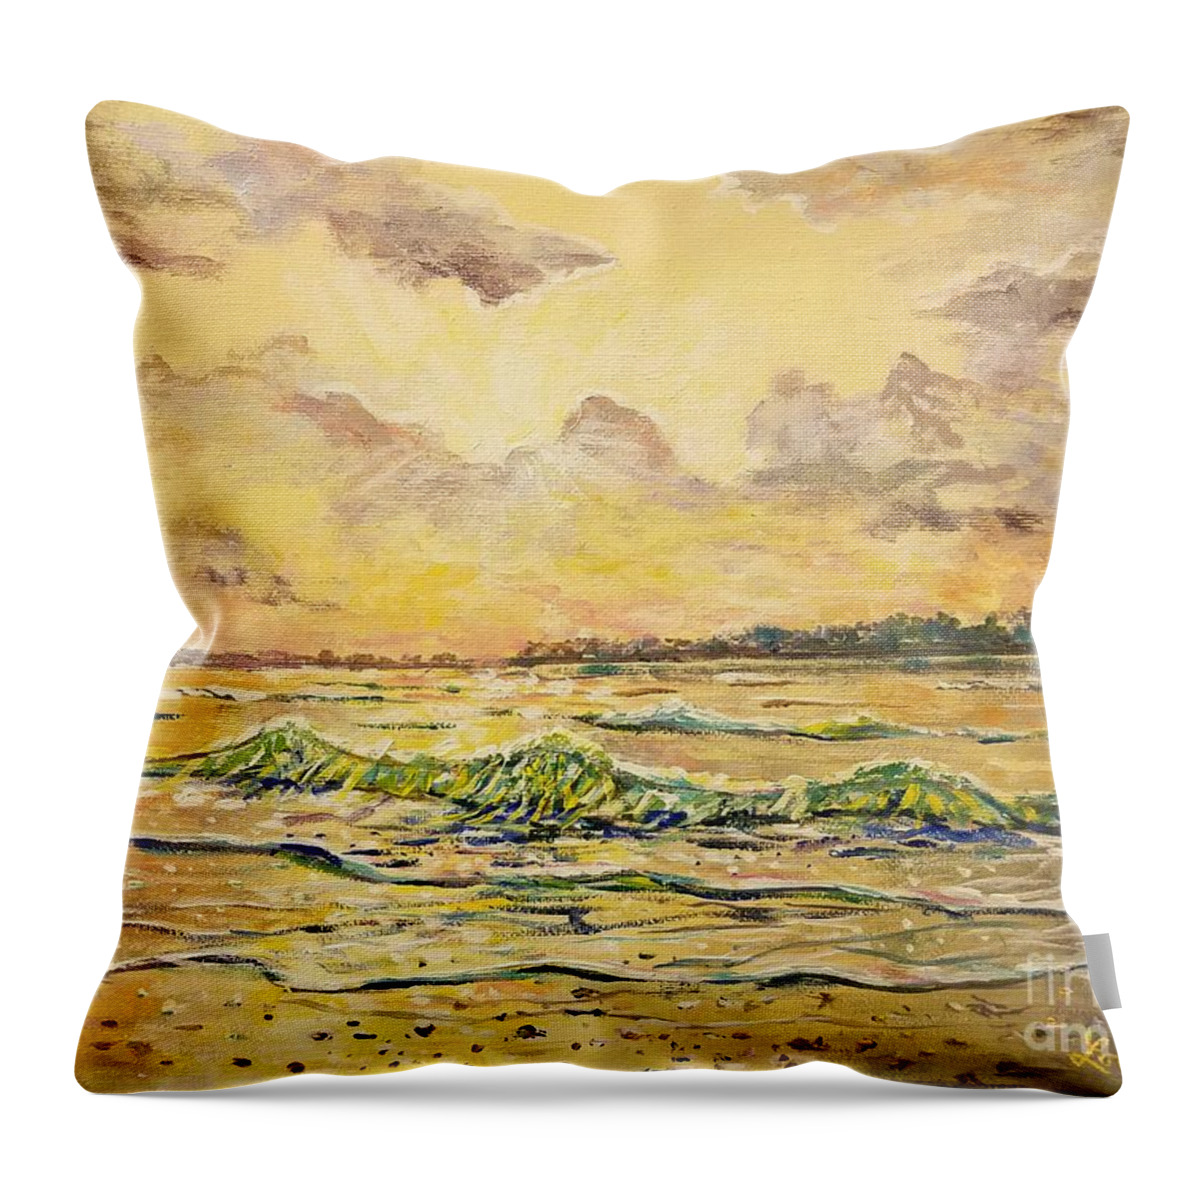 Siesta Key Beach Throw Pillow featuring the painting Dawns View of Siesta Key by Lou Ann Bagnall